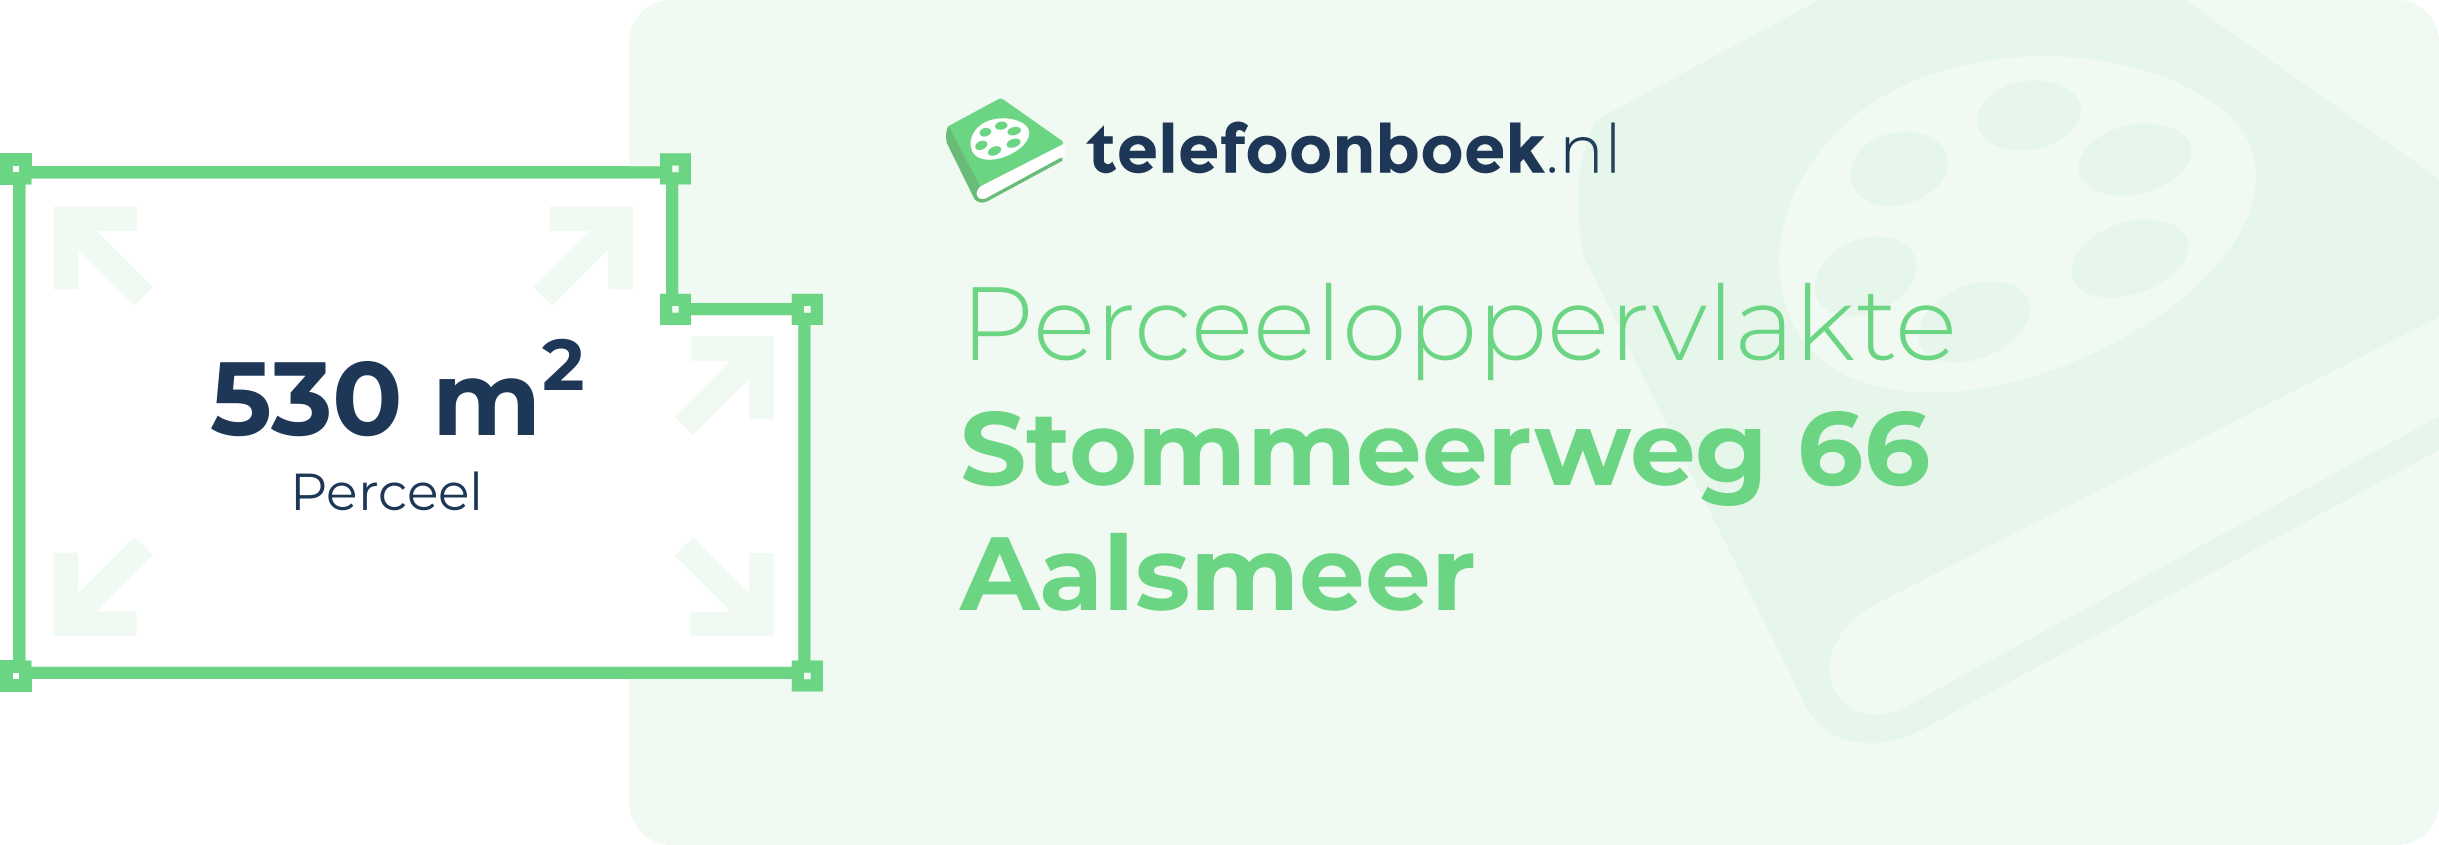 Perceeloppervlakte Stommeerweg 66 Aalsmeer